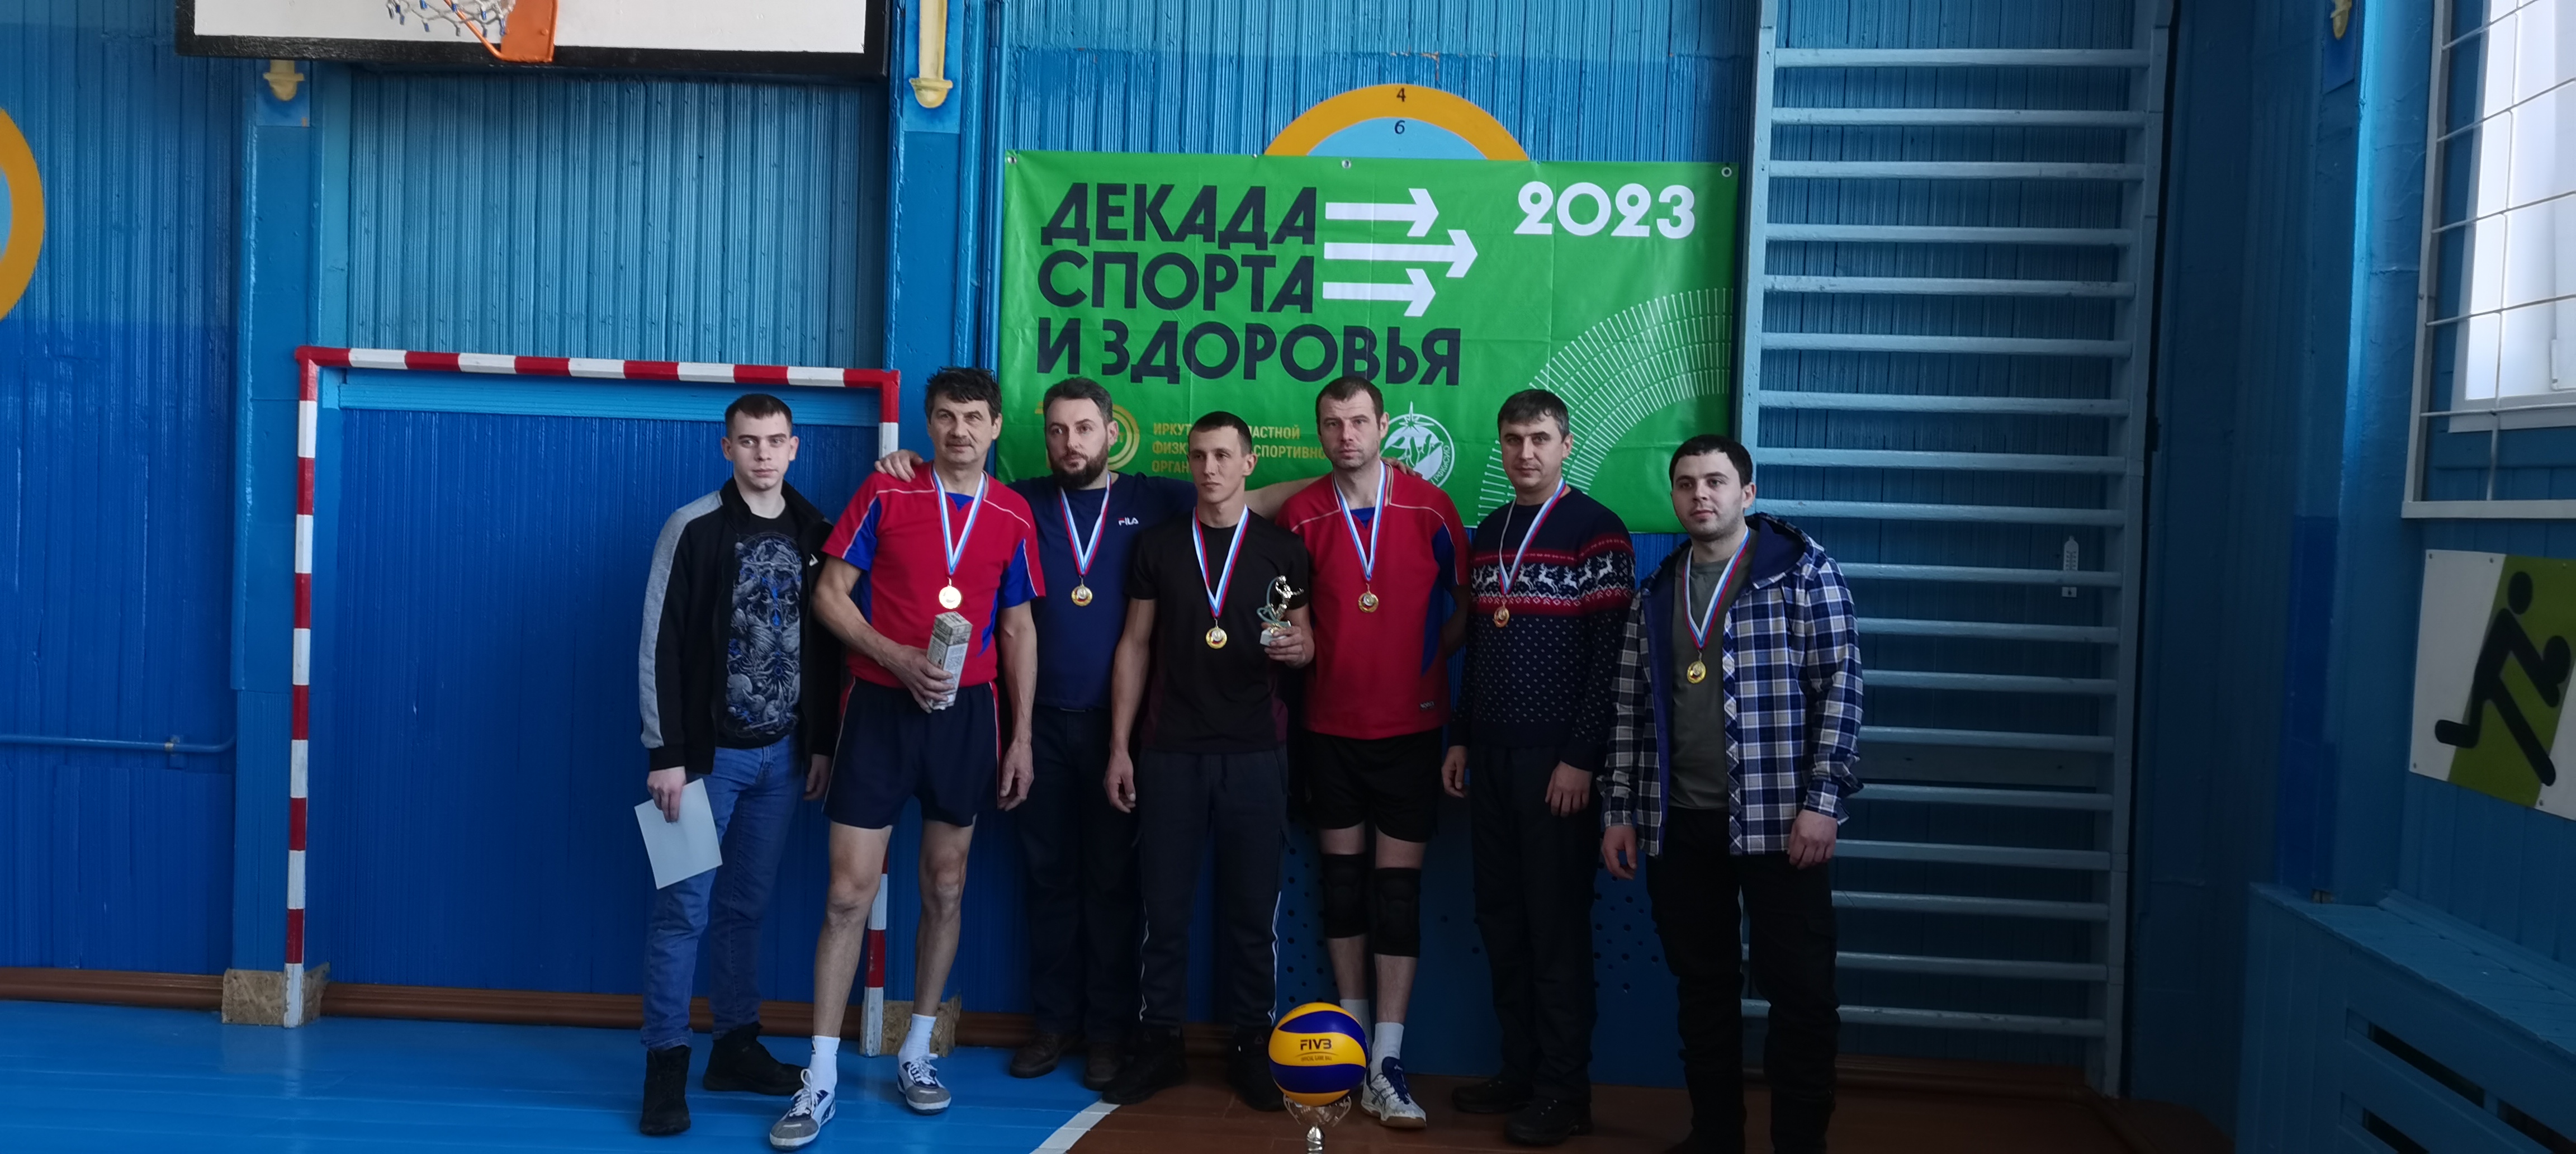 Участниками Декады спорта и здоровья стали более 600 жителей Братского района